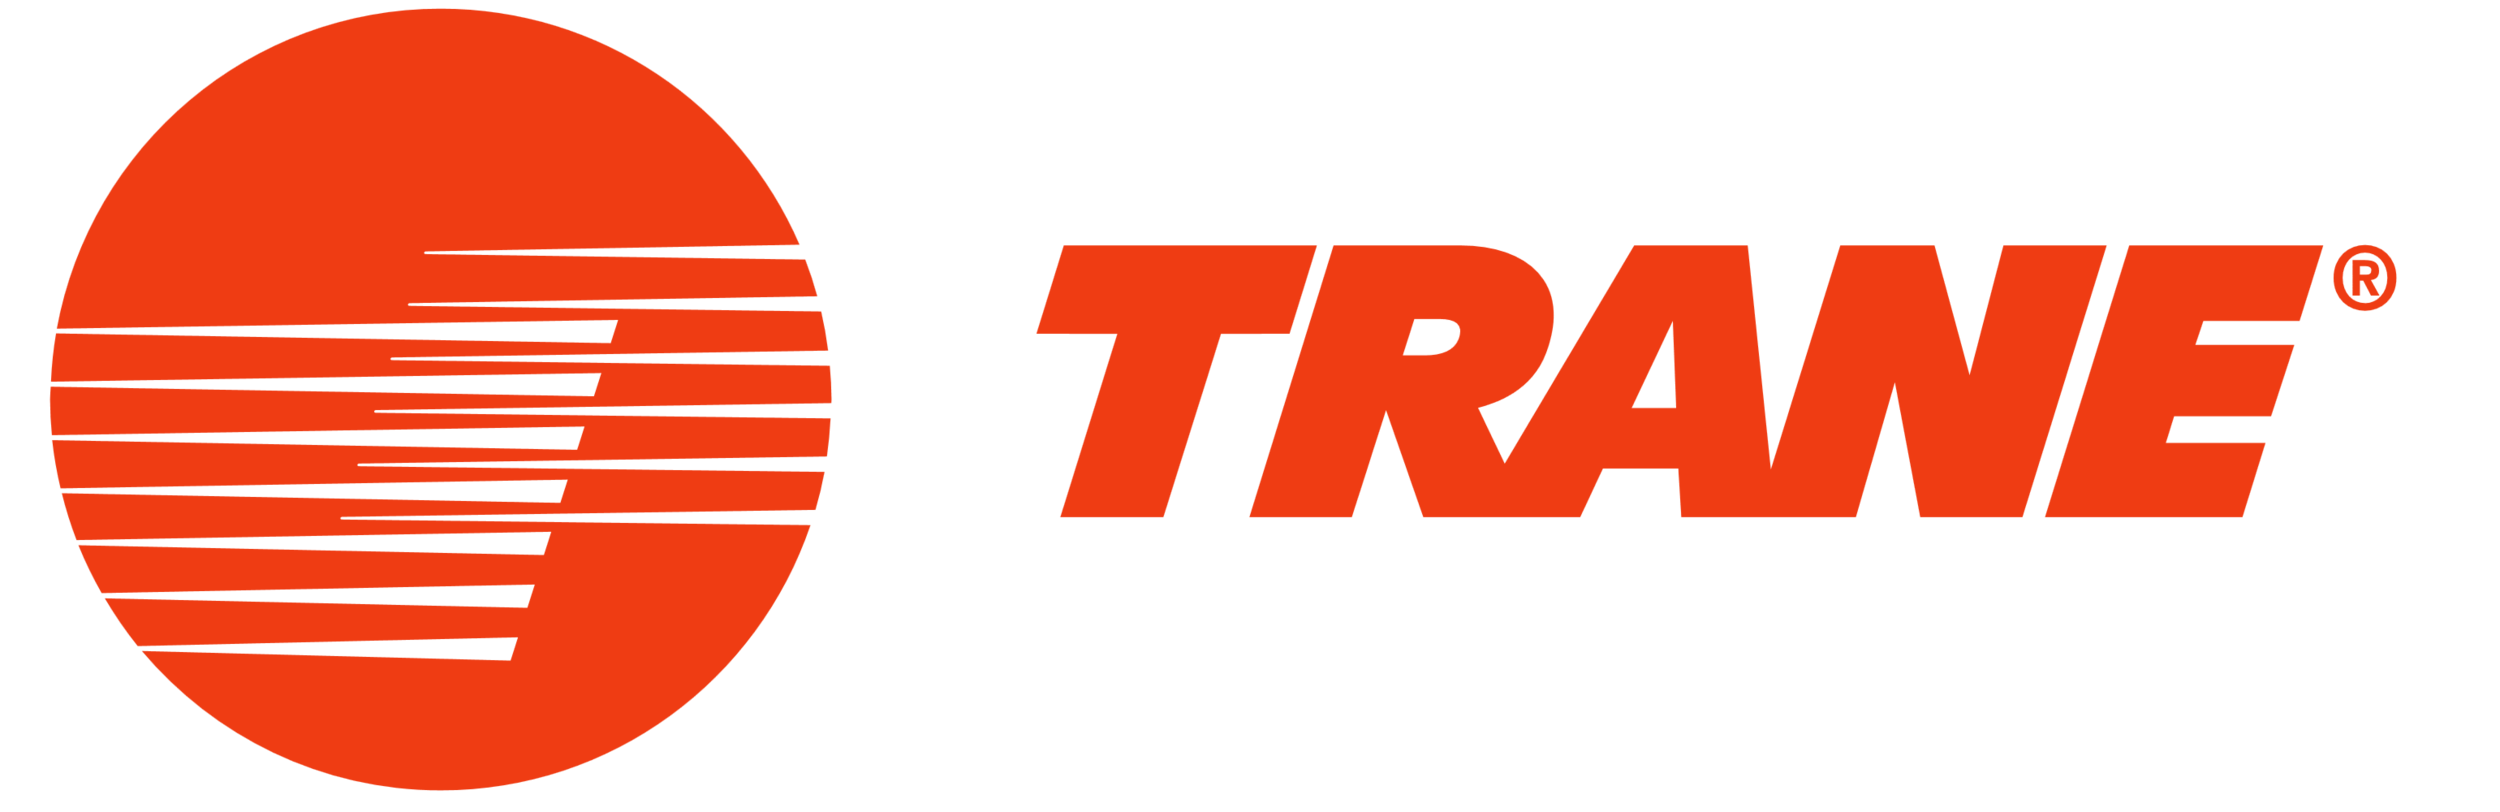 Trane_logo_logotype.png